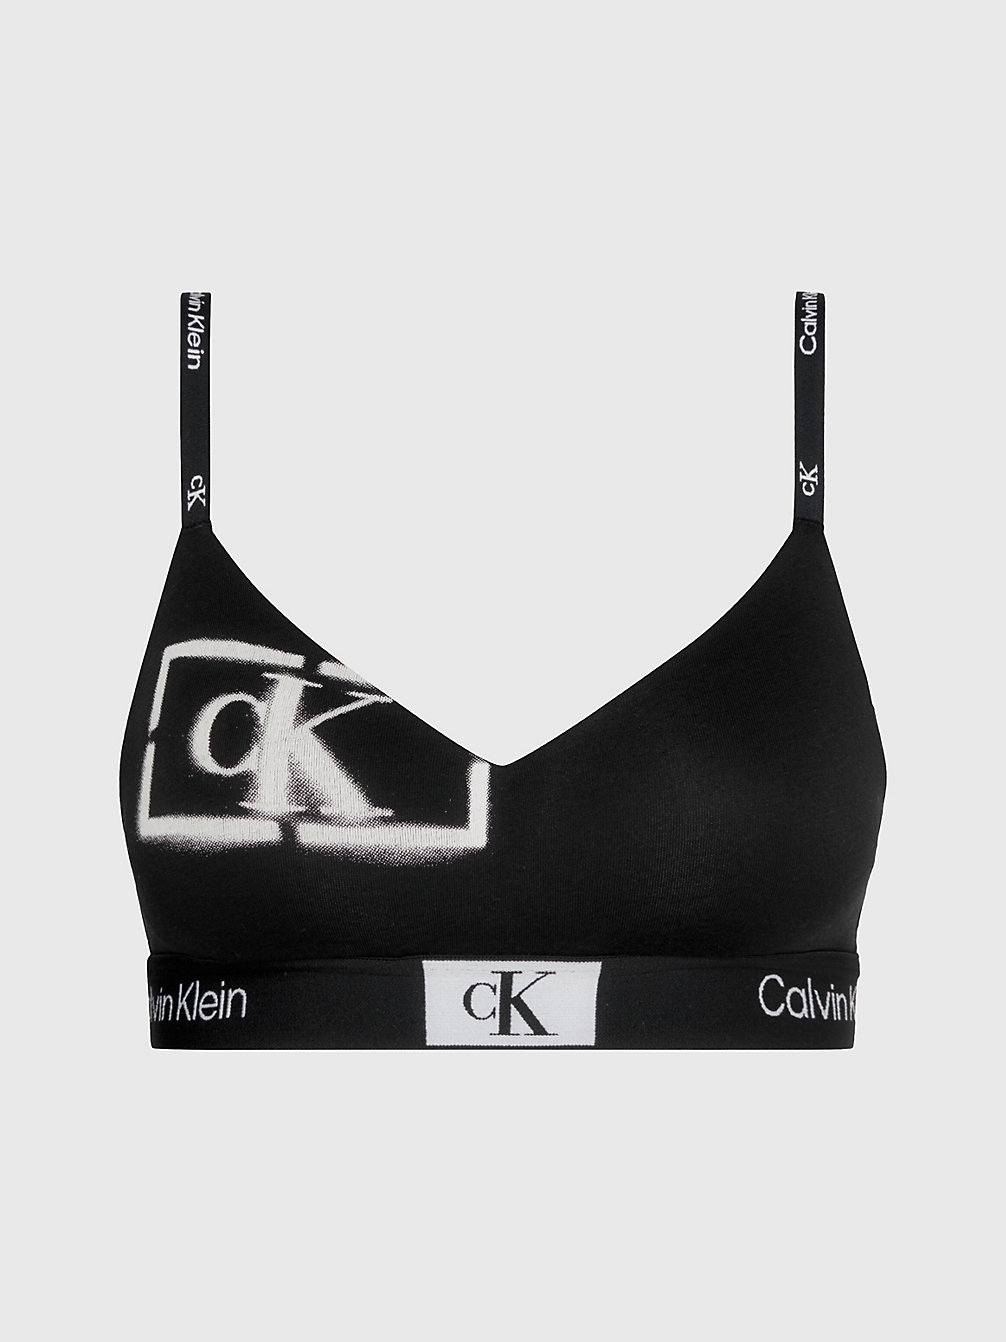 STENCIL LOGO PRINT+BLACK Bralette Met Spaghettibandjes- Ck96 undefined dames Calvin Klein